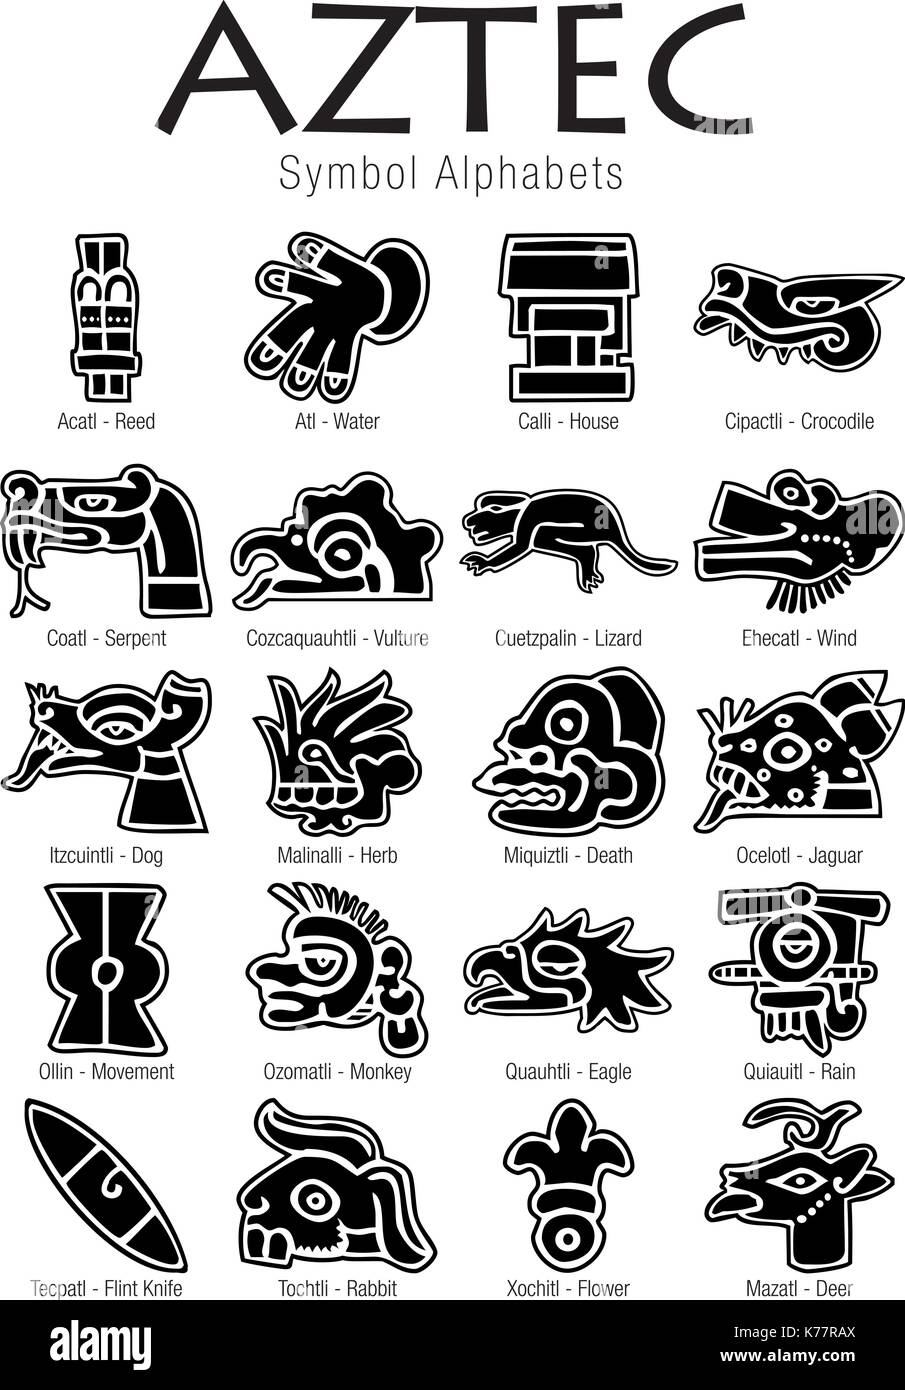 Der aztekische Symbol Alphabete in schwarzer Farbe auf weißem Hintergrund Stock Vektor